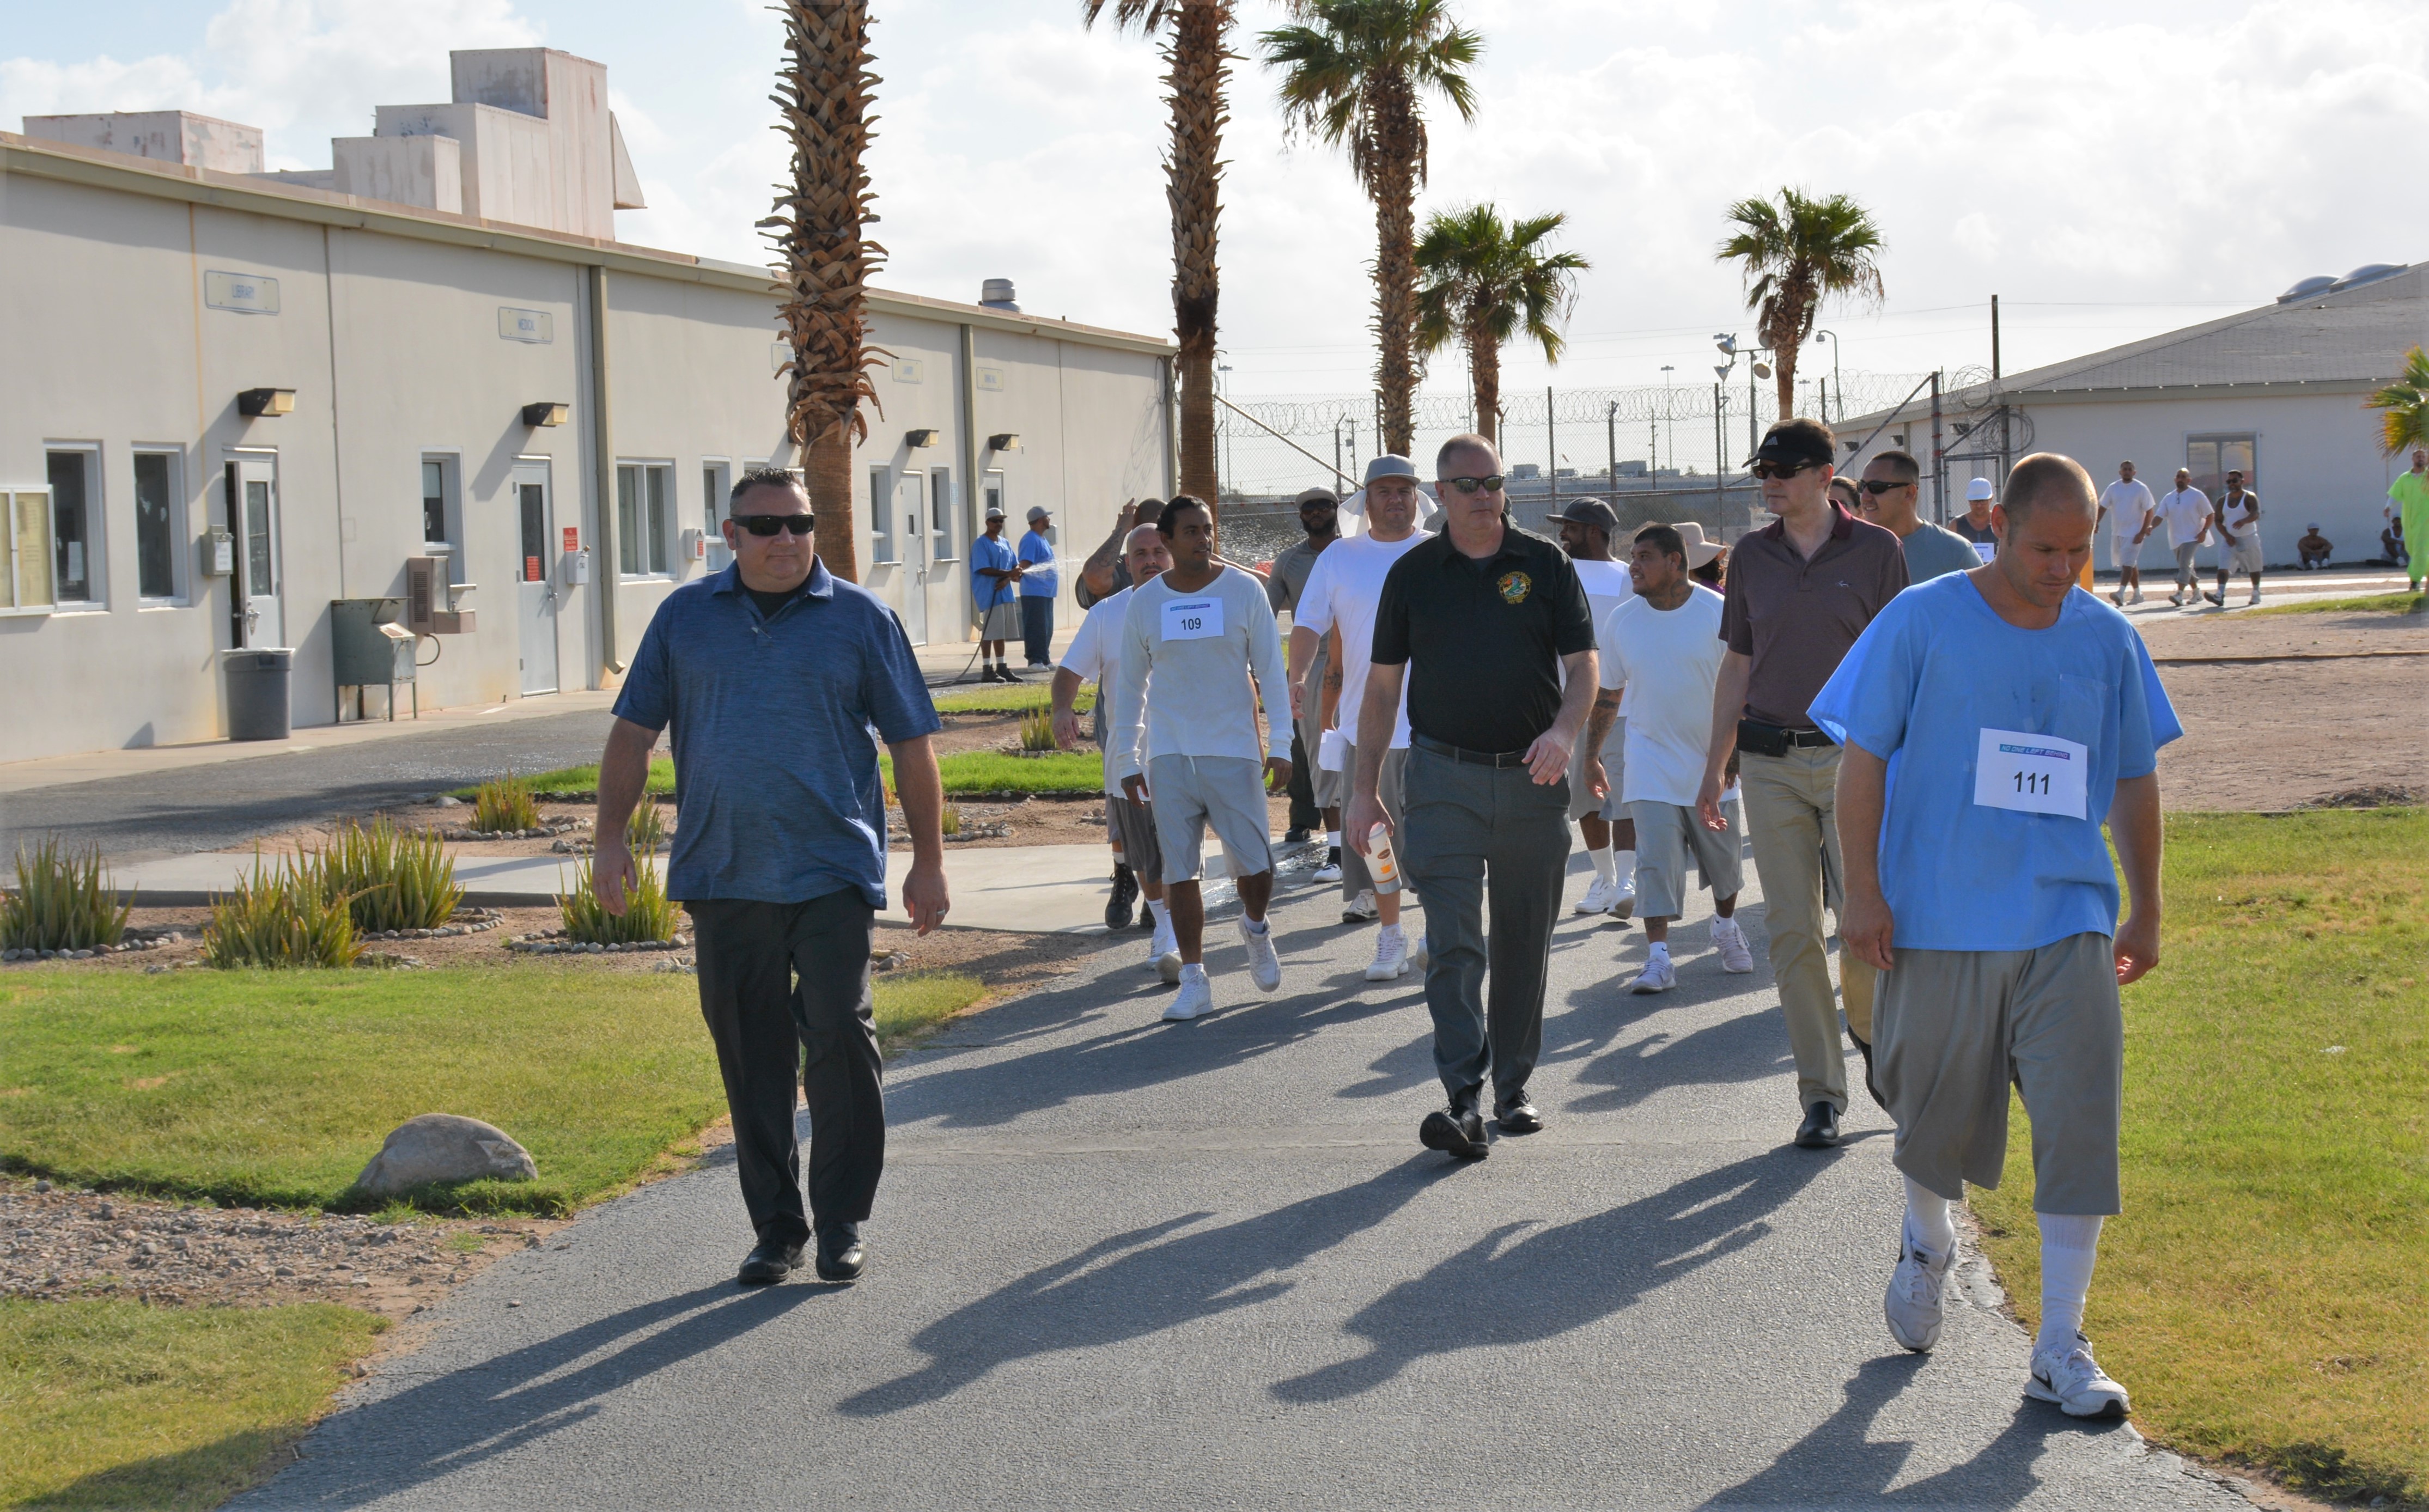 Men walk along a path inside a prison.